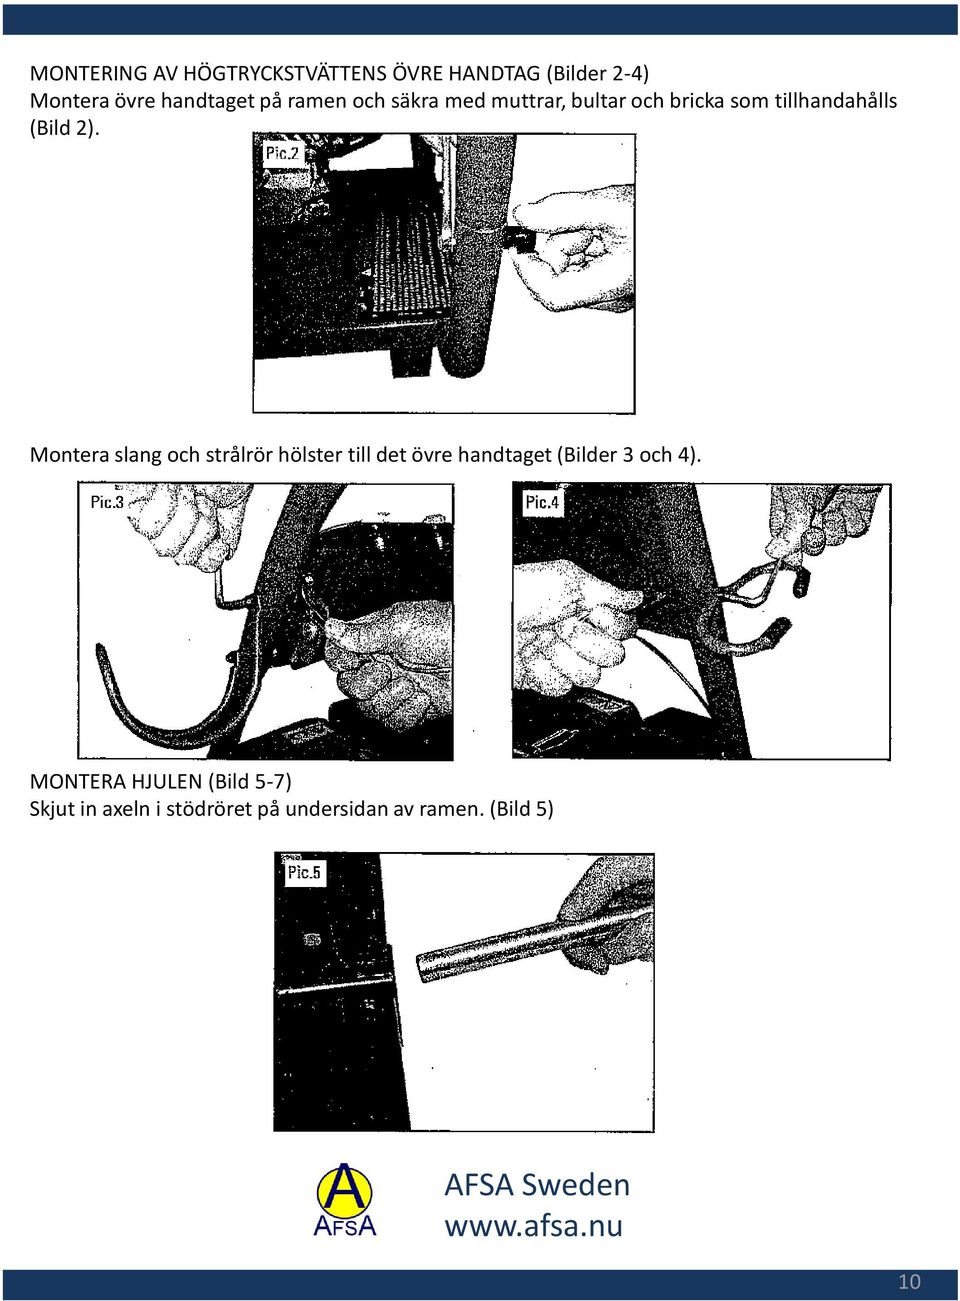 Montera slang och strålrör hölster till det övre handtaget (Bilder 3 och 4).